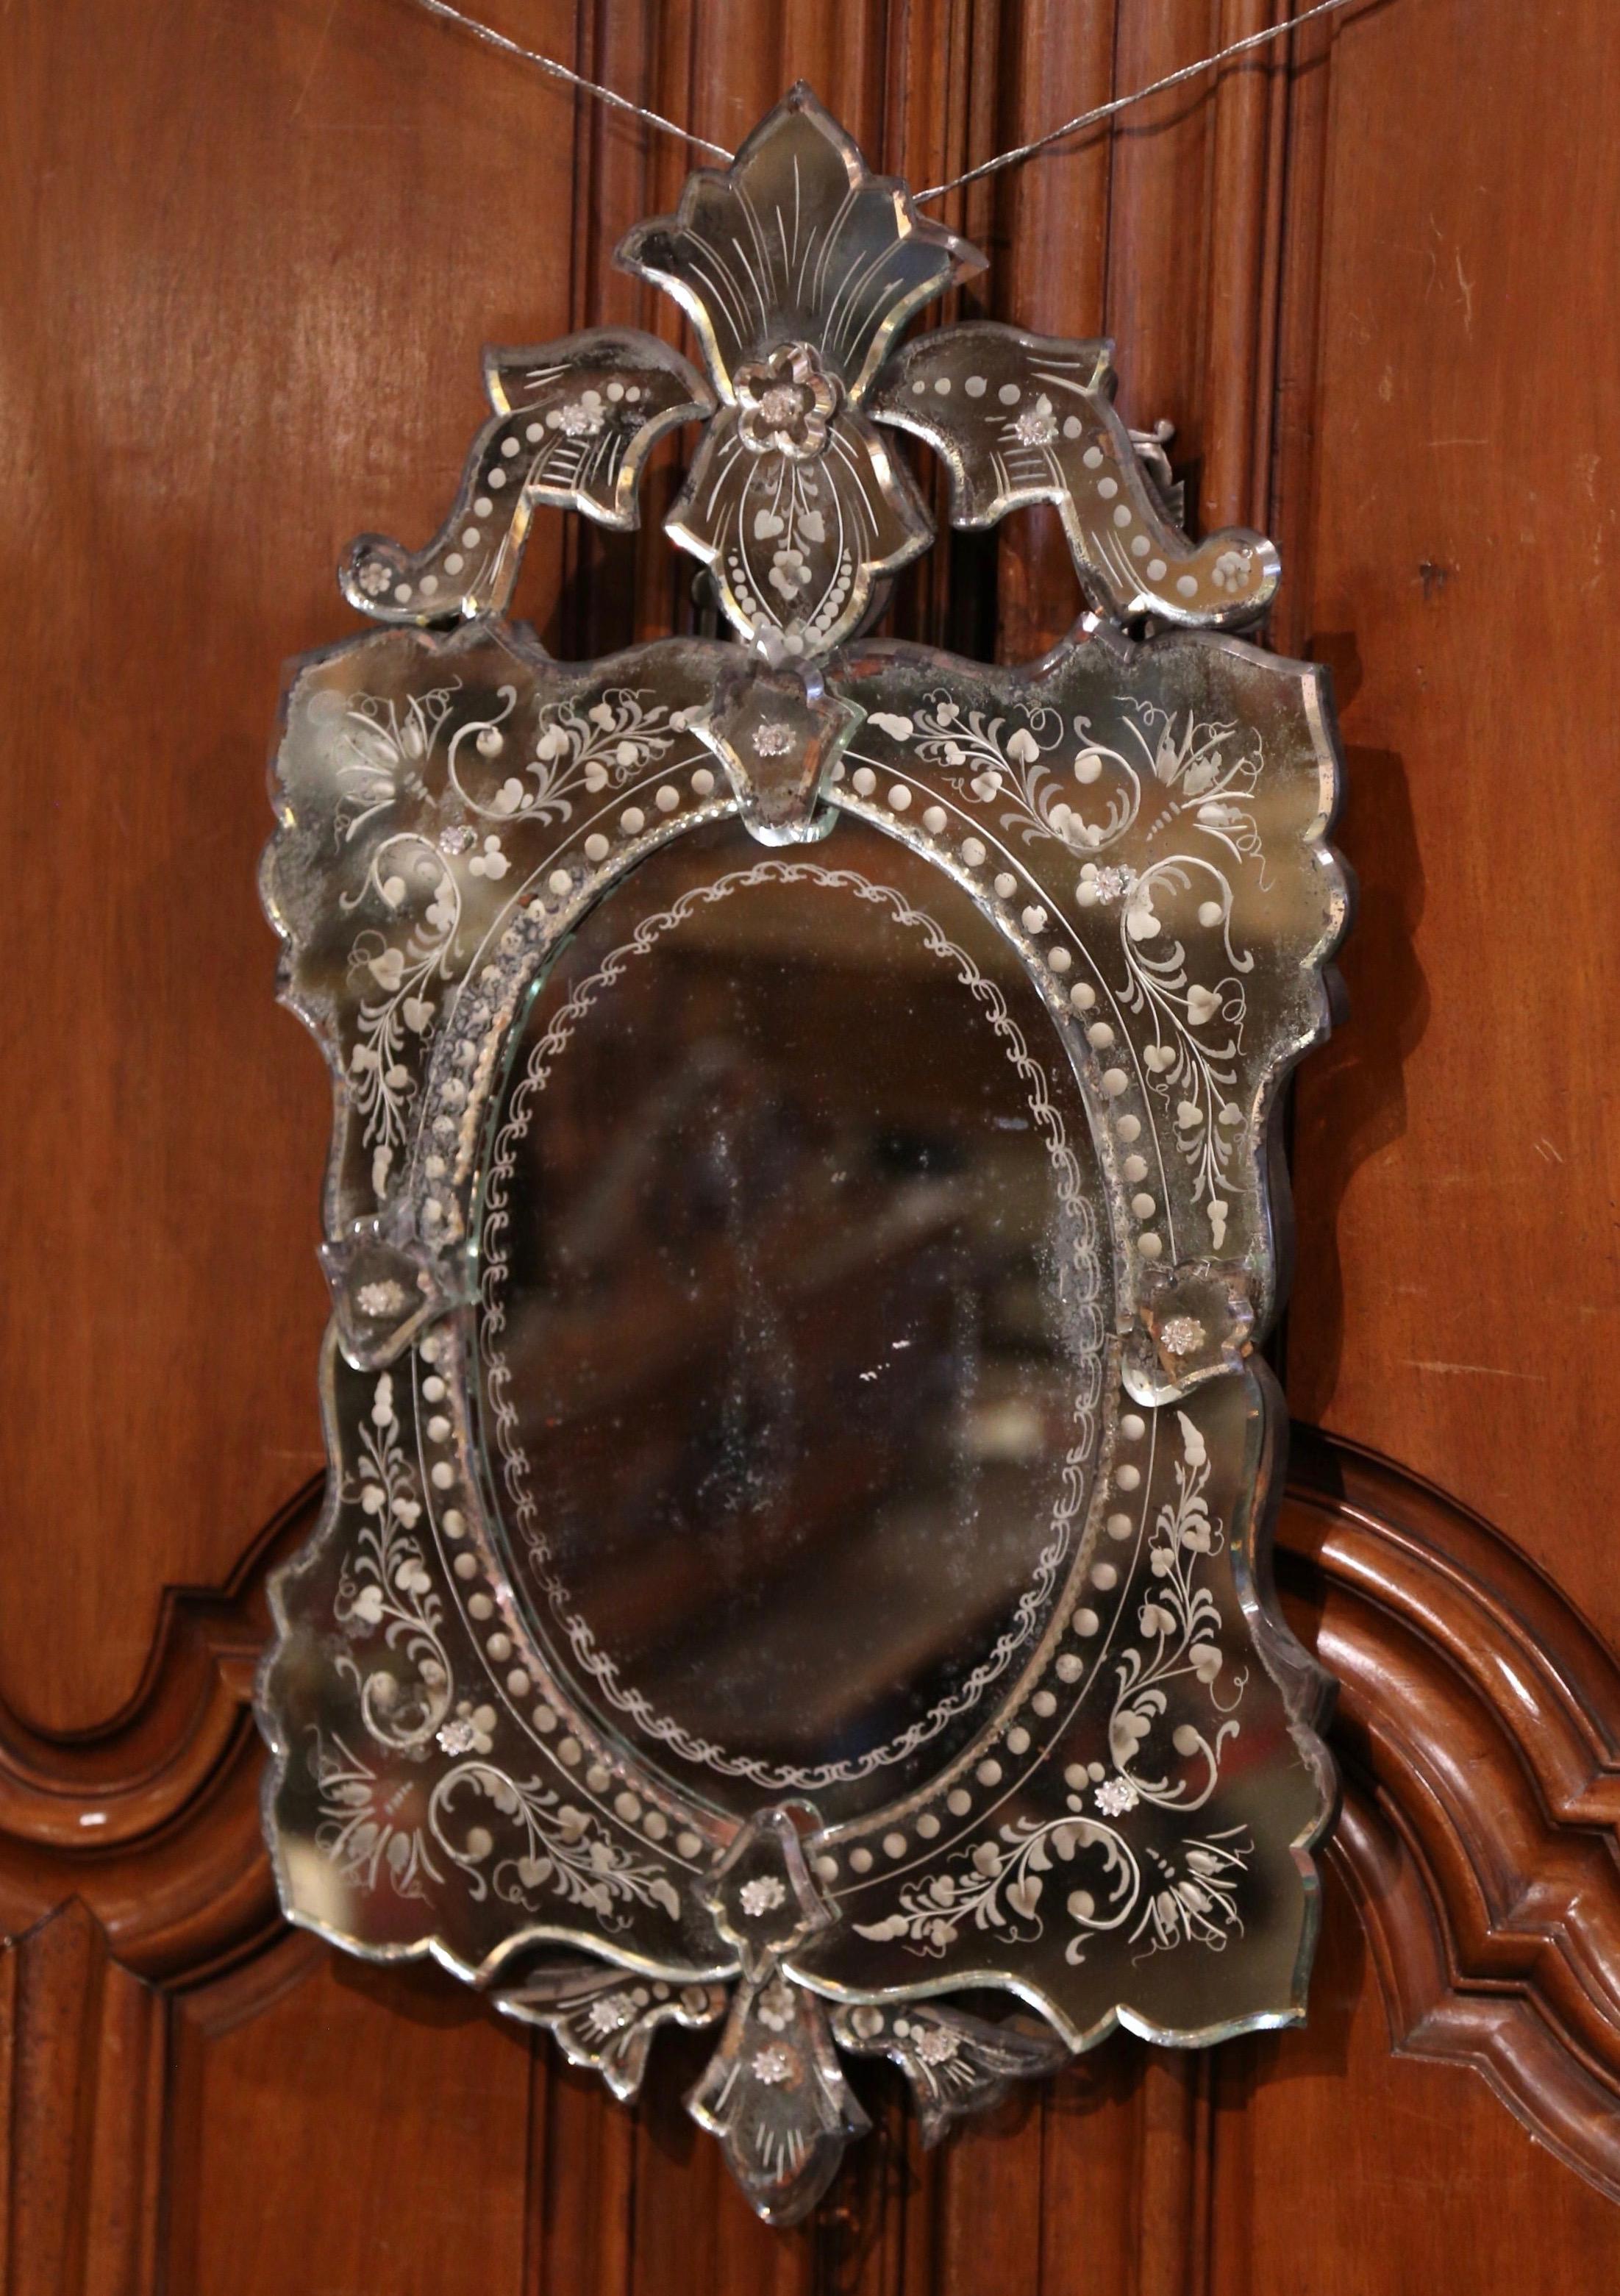 Décorez une salle d'eau ou une chambre à coucher avec cet élégant miroir ancien. Fabriqué à Venise, en Italie, vers 1920, ce miroir mural présente un grand motif de feuilles sculptées au fronton, flanqué de feuillages sur les deux côtés. Chaque coin